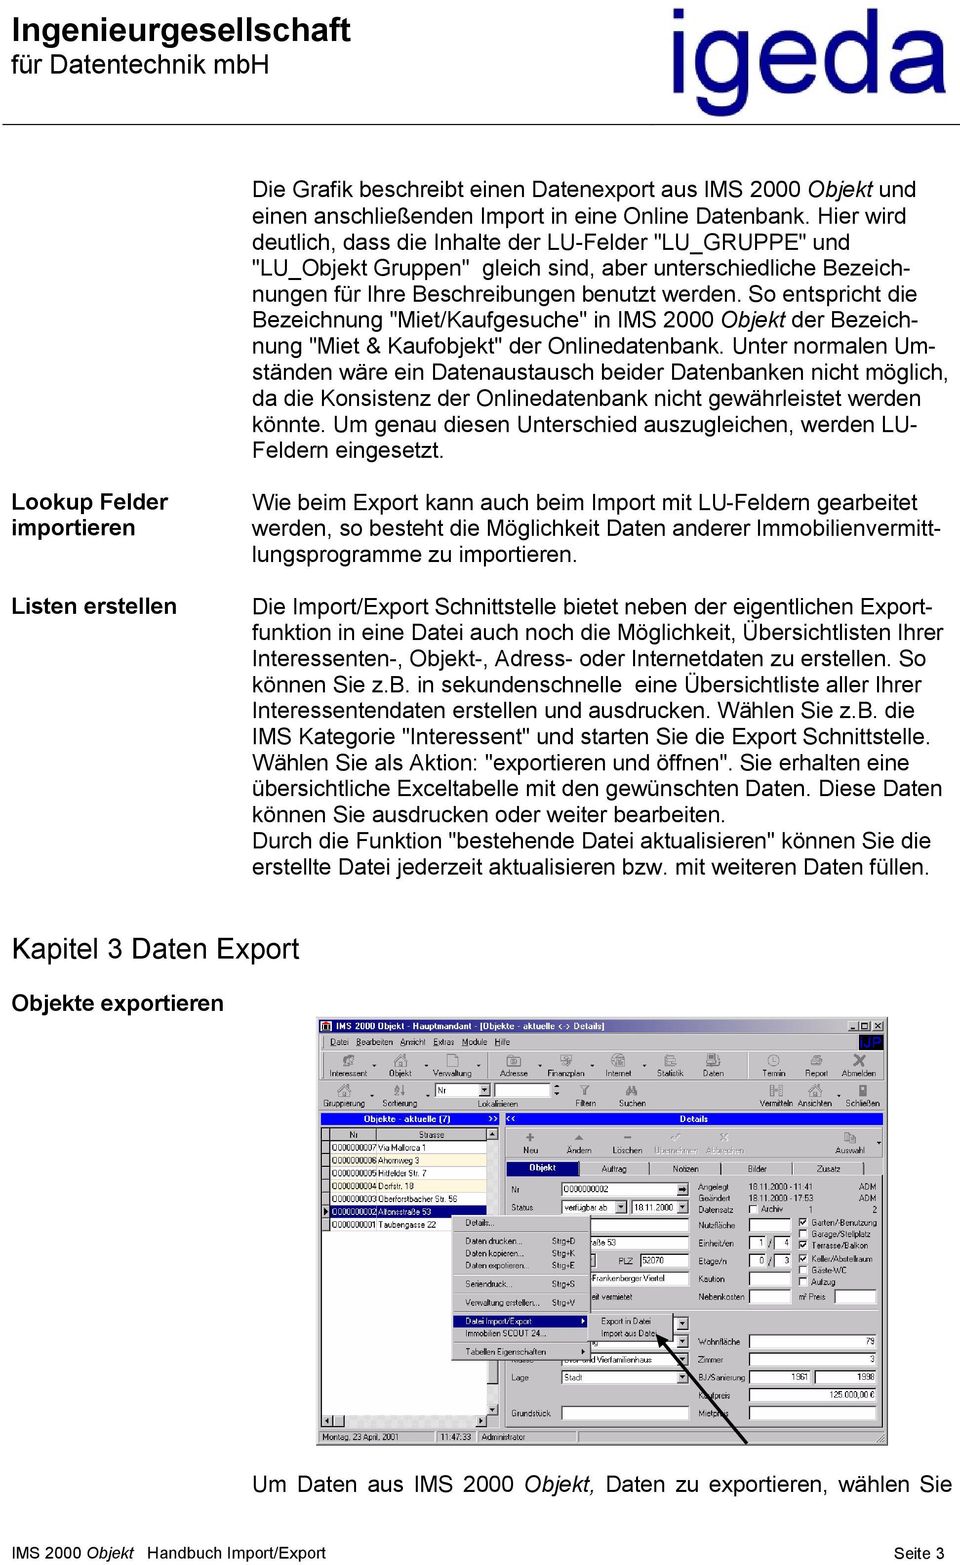 So entspricht die Bezeichnung "Miet/Kaufgesuche" in IMS 2000 Objekt der Bezeichnung "Miet & Kaufobjekt" der Onlinedatenbank.